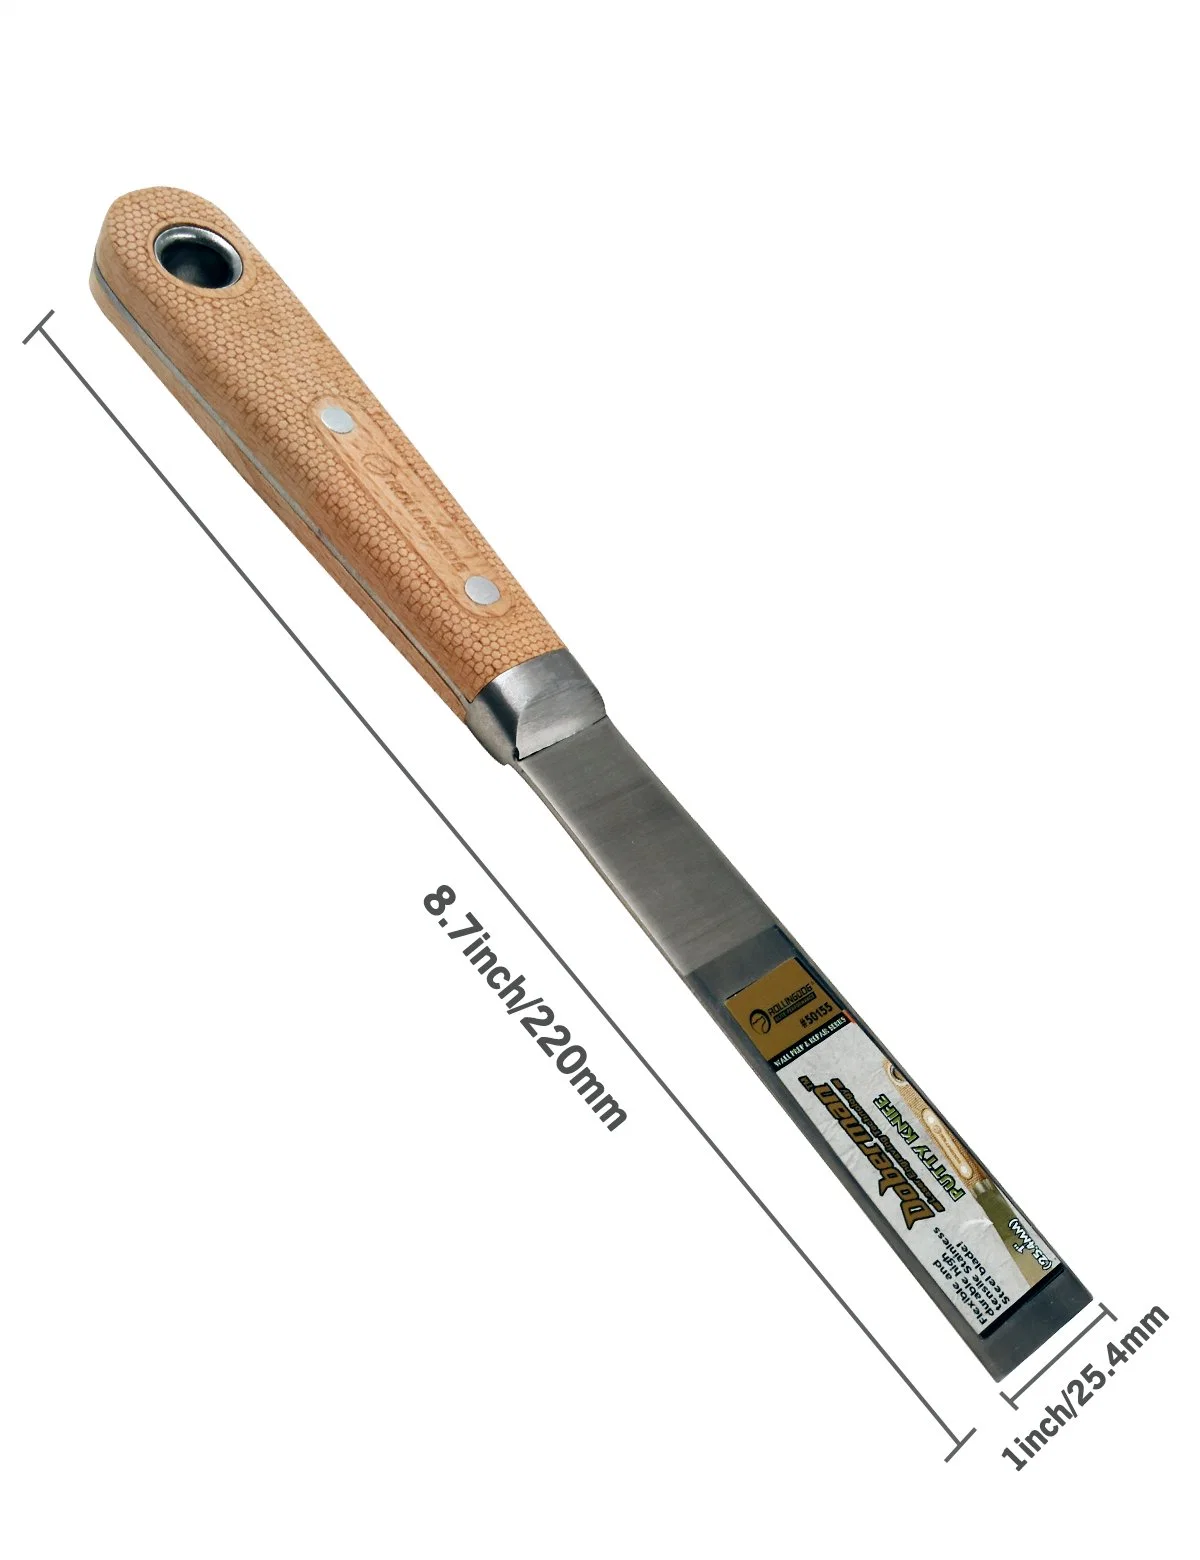 Rollingdog-Elite Doberman 50155 420 Acero inoxidable 1" cuchillo láser Mango de madera de haya grabado